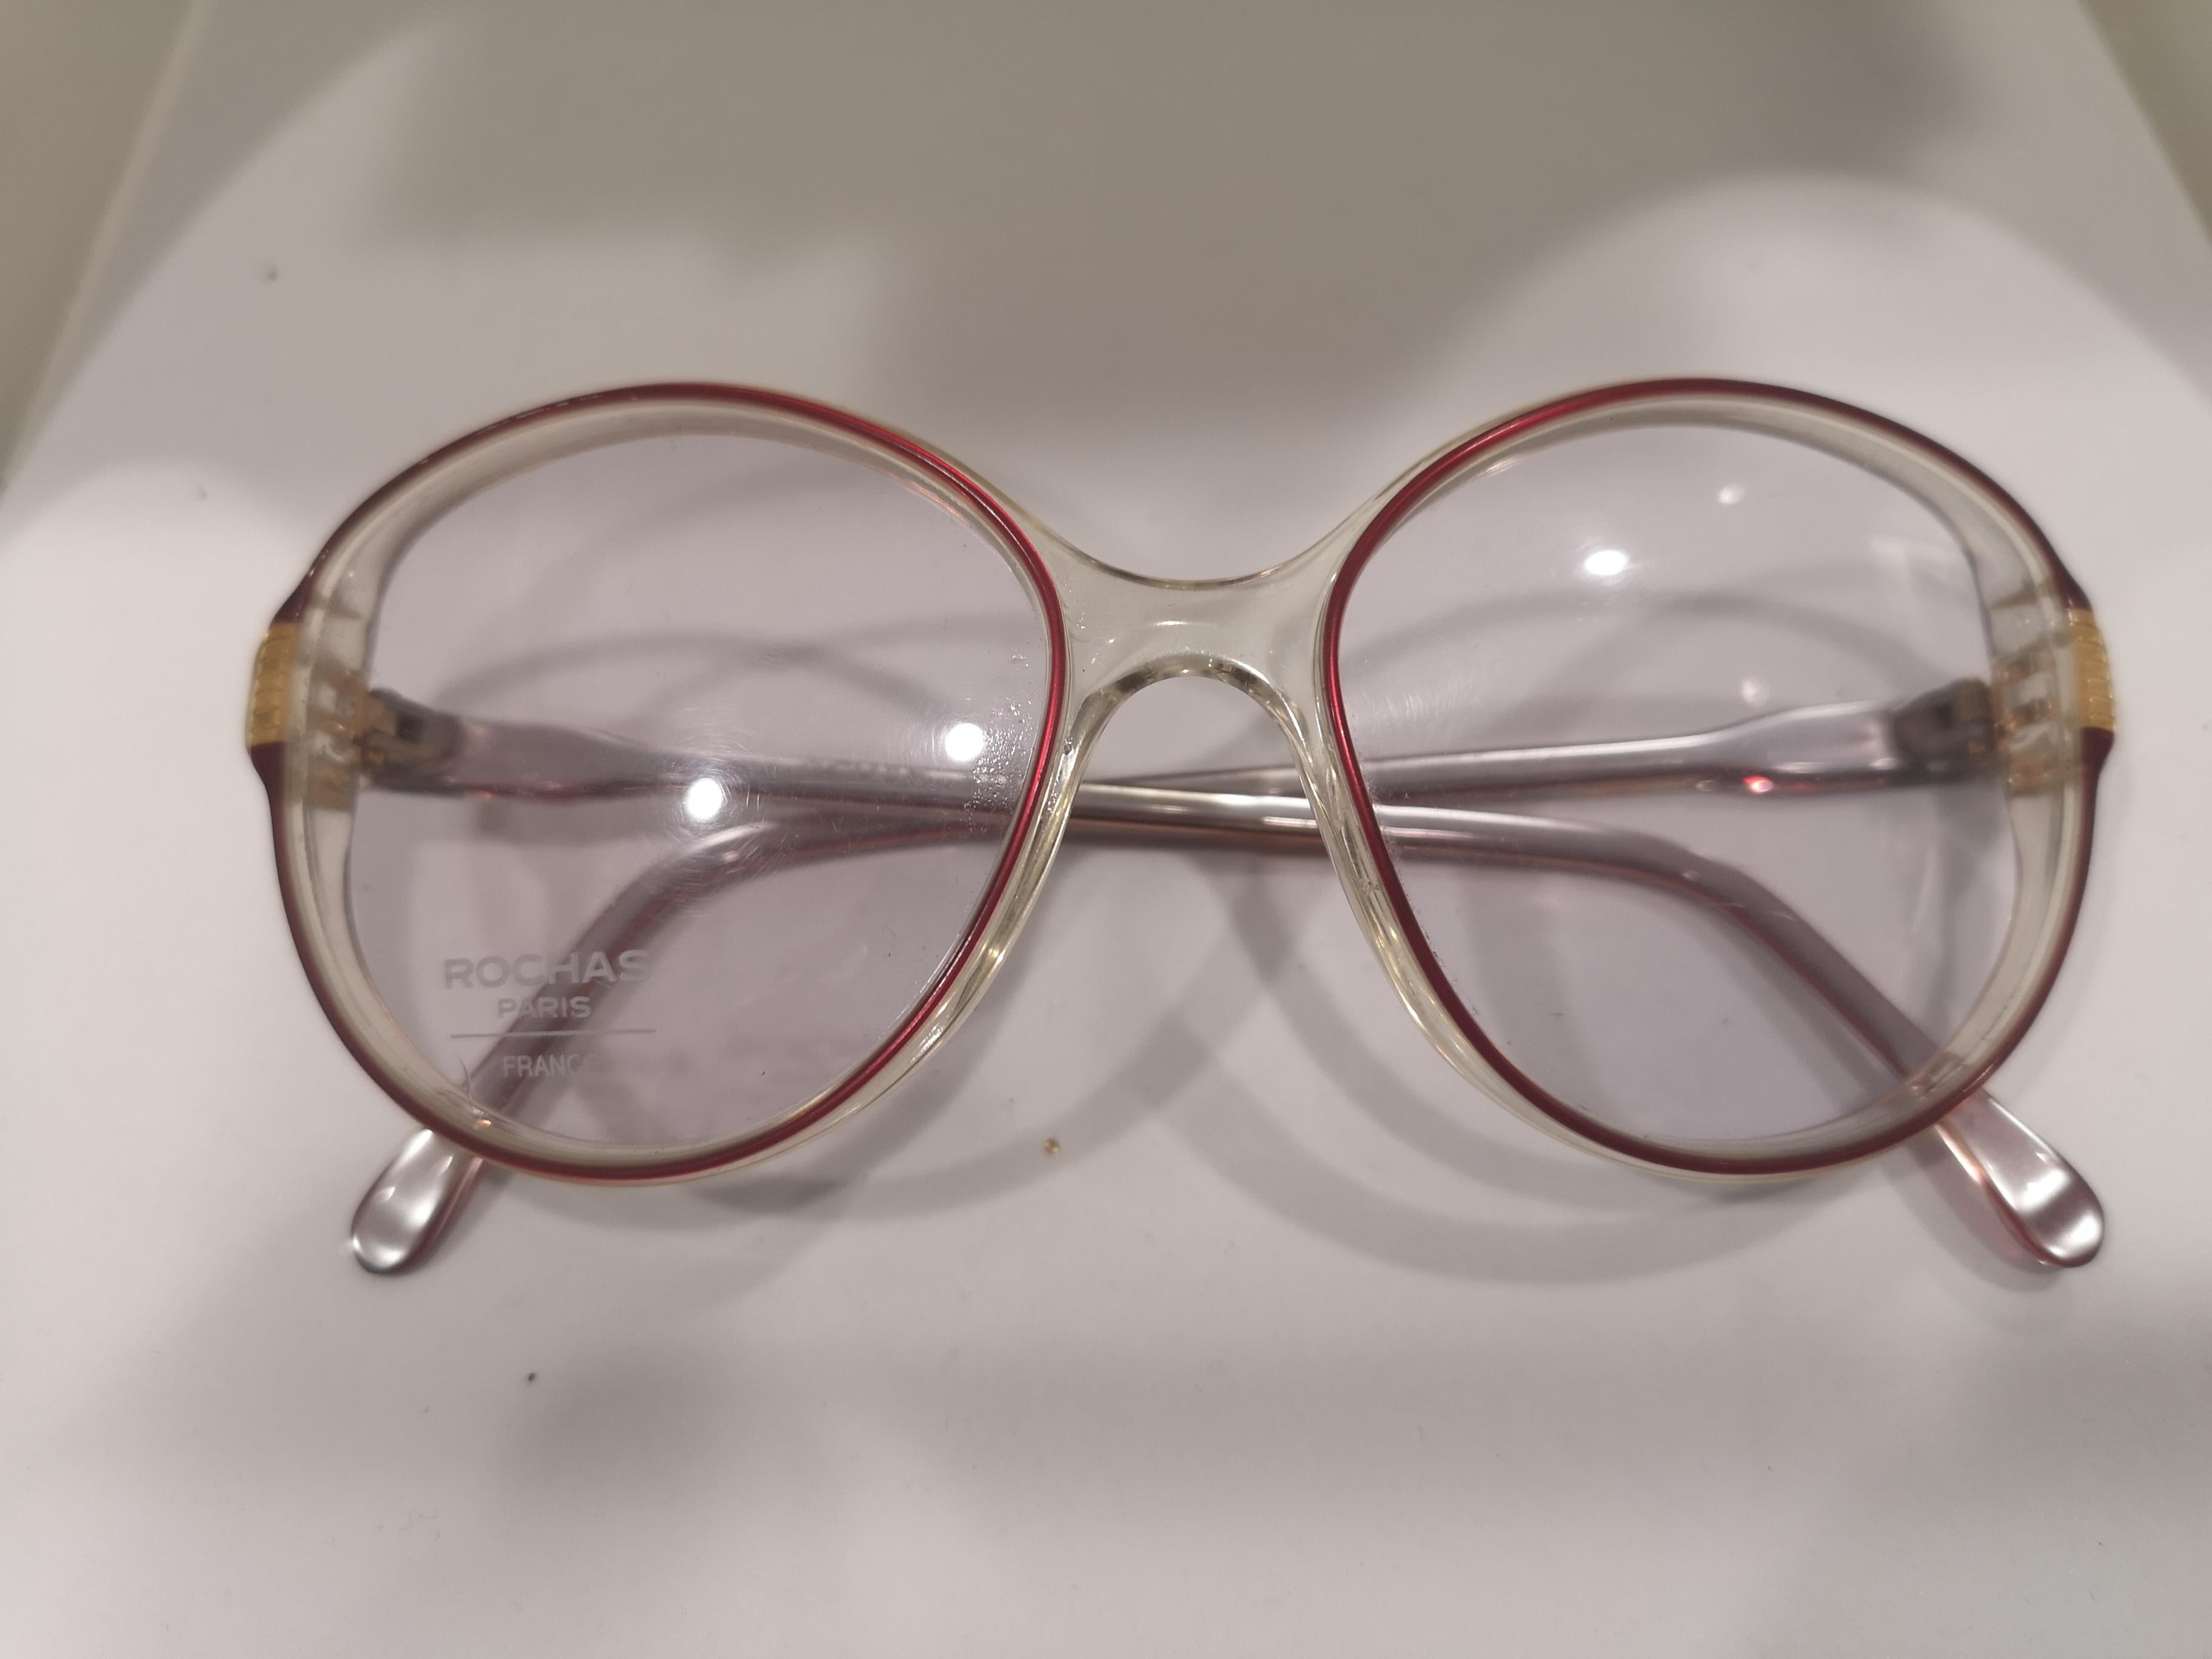 Gray Rochas frame glasses